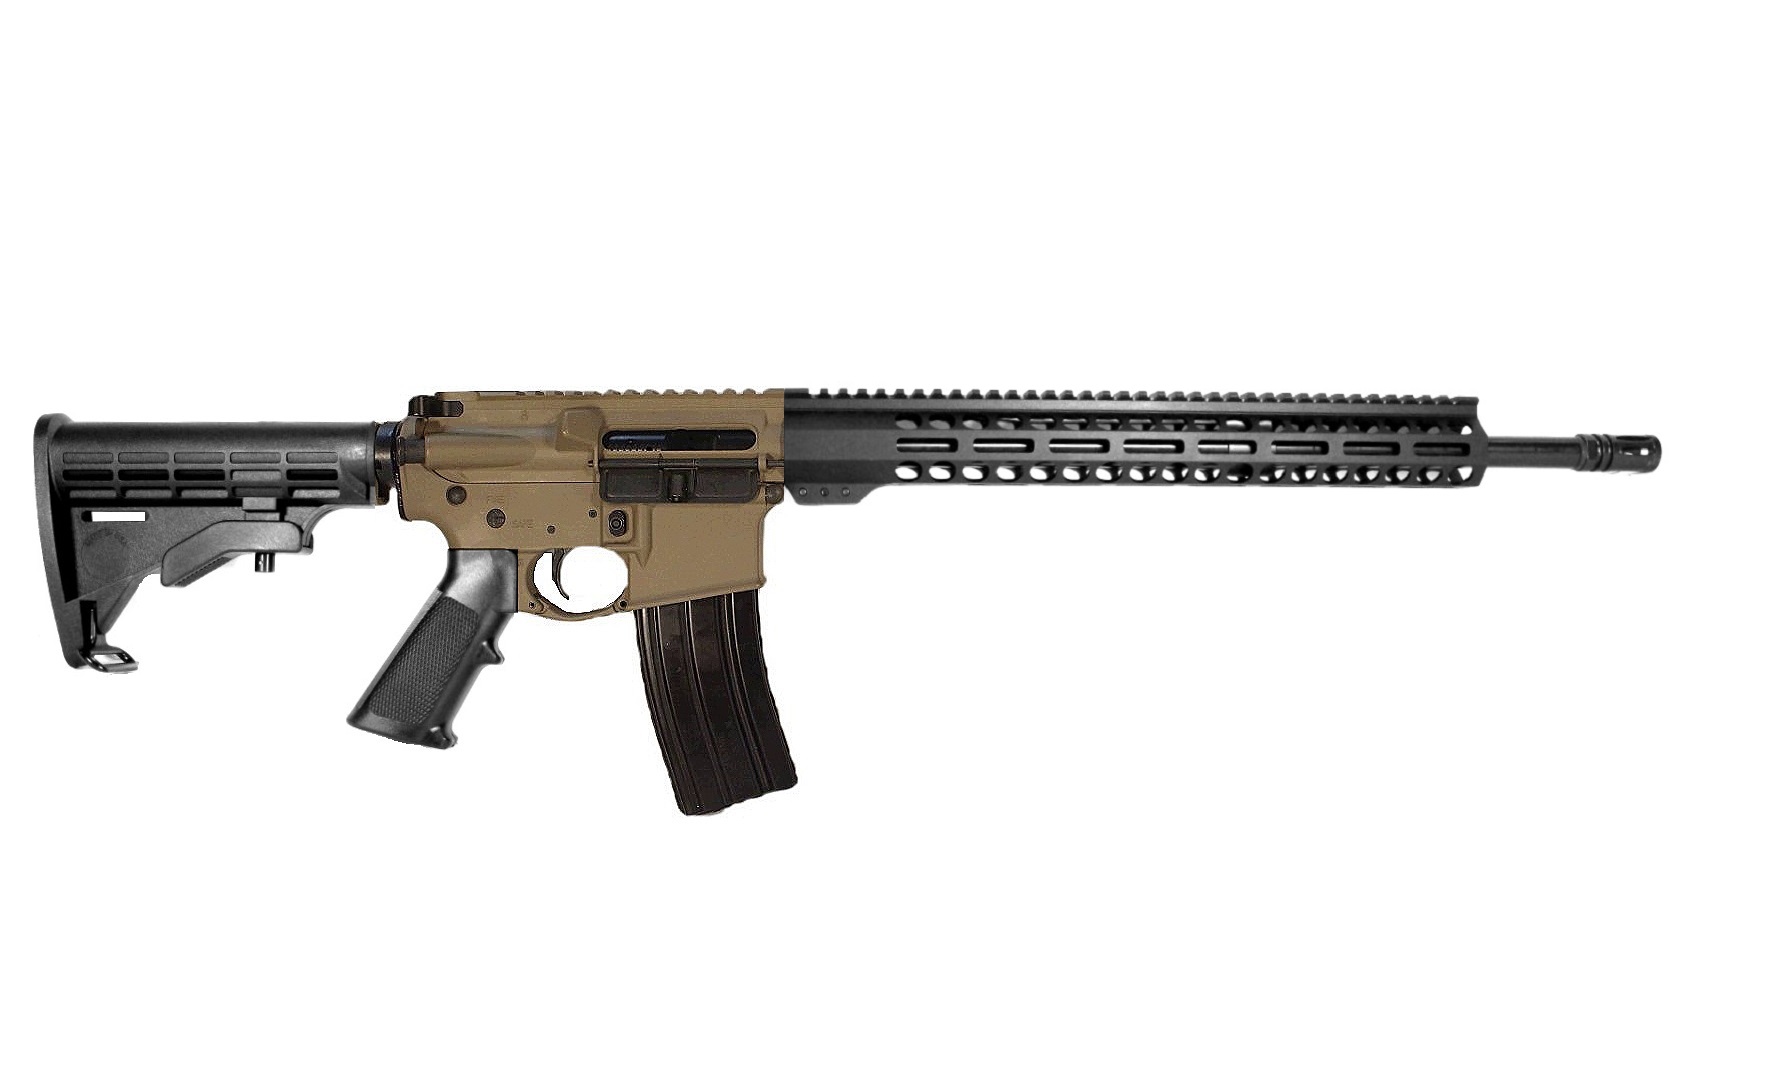 18 inch 450 Bushmaster AR-15 Rifle | USA MADE